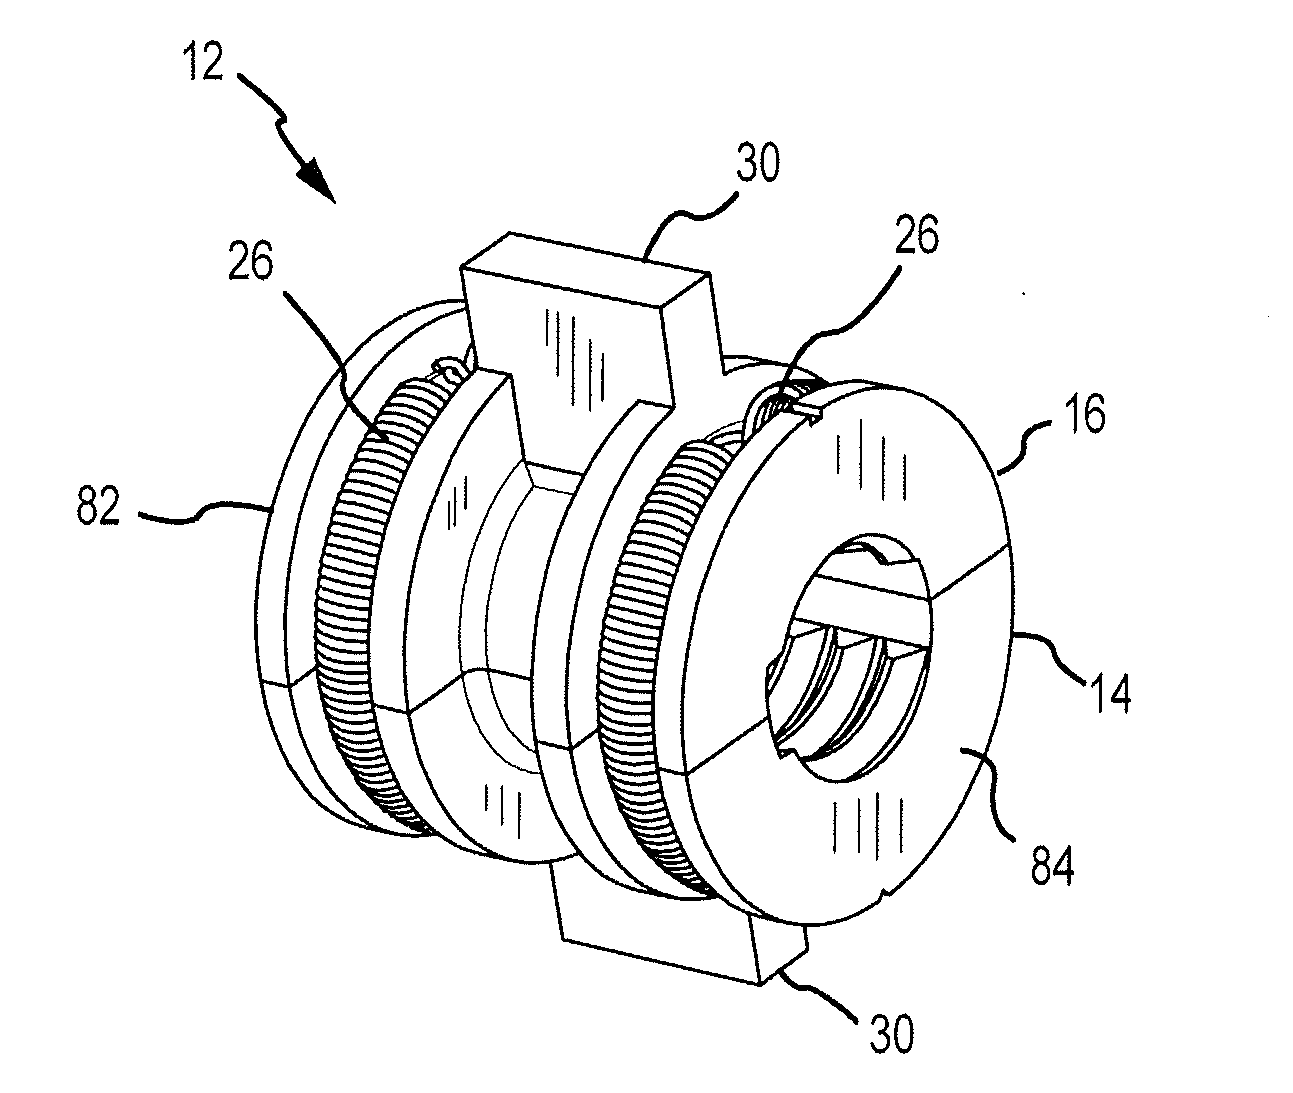 Motor mechanism